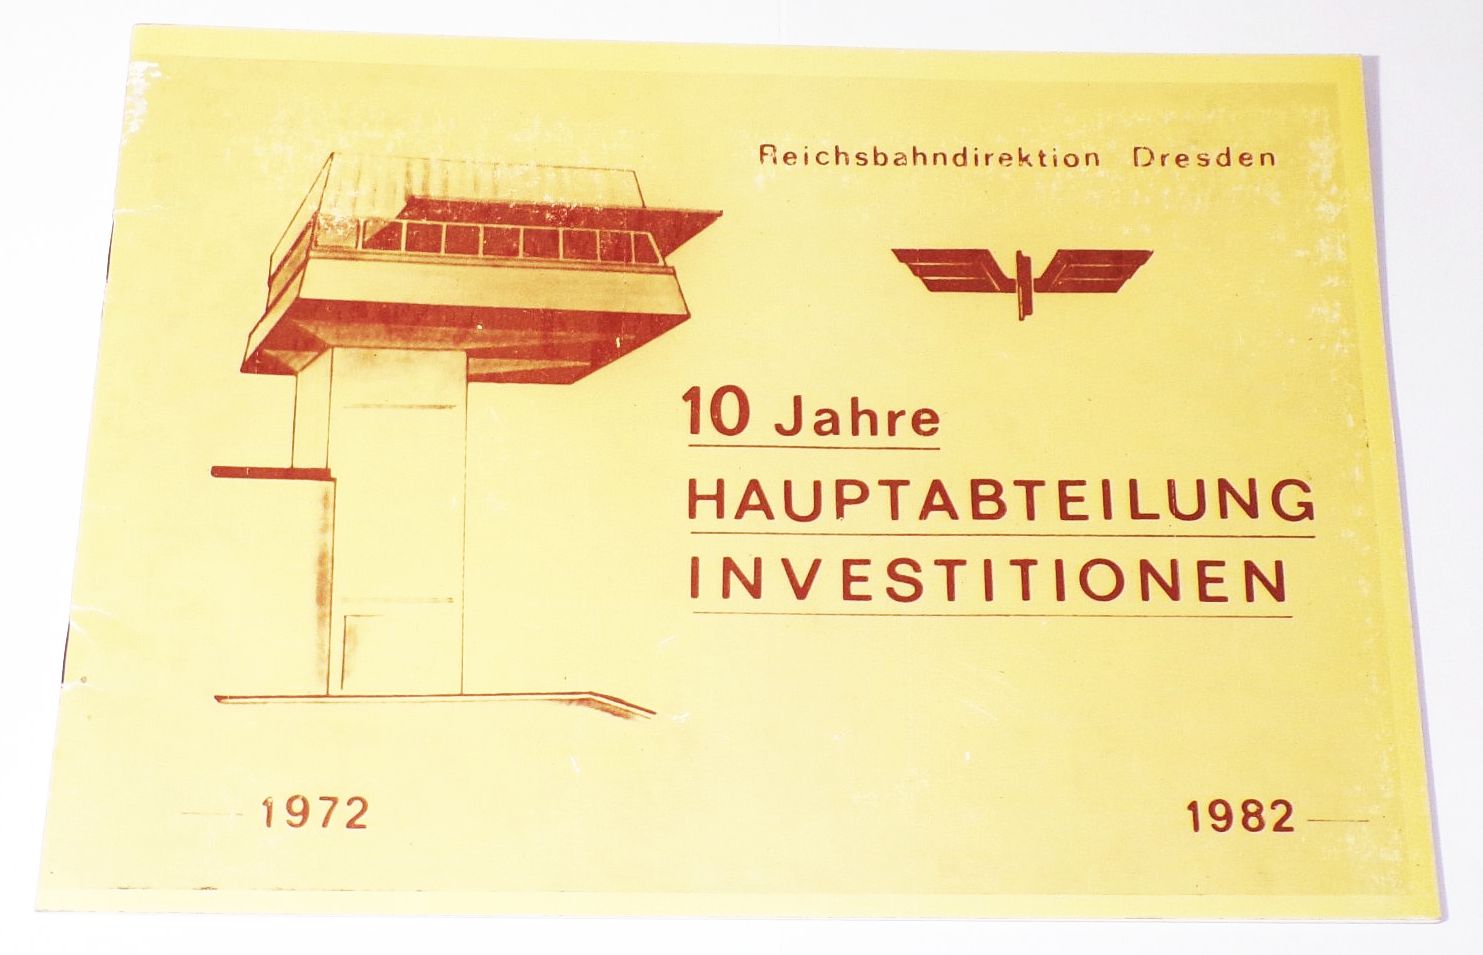 Reichsbahn Direktion Dresden 10 Jahre Hauptabteilung Investitionen 1982